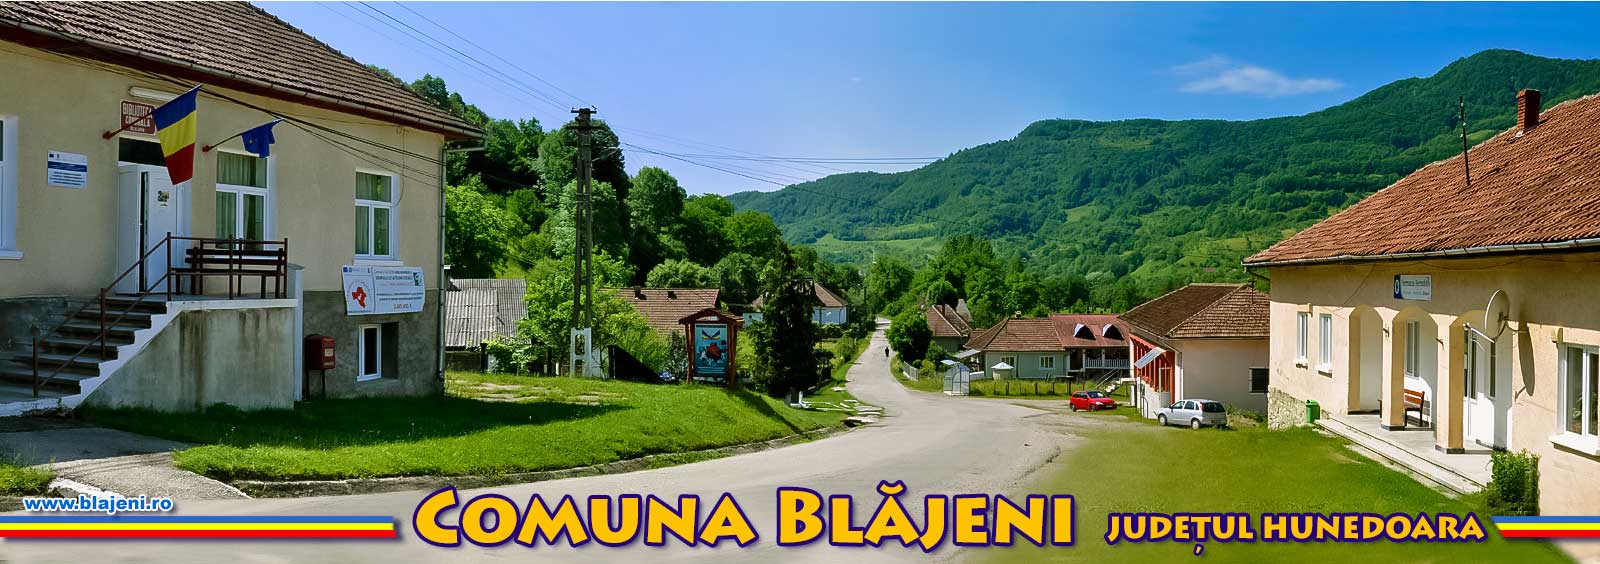 Comuna Blajeni